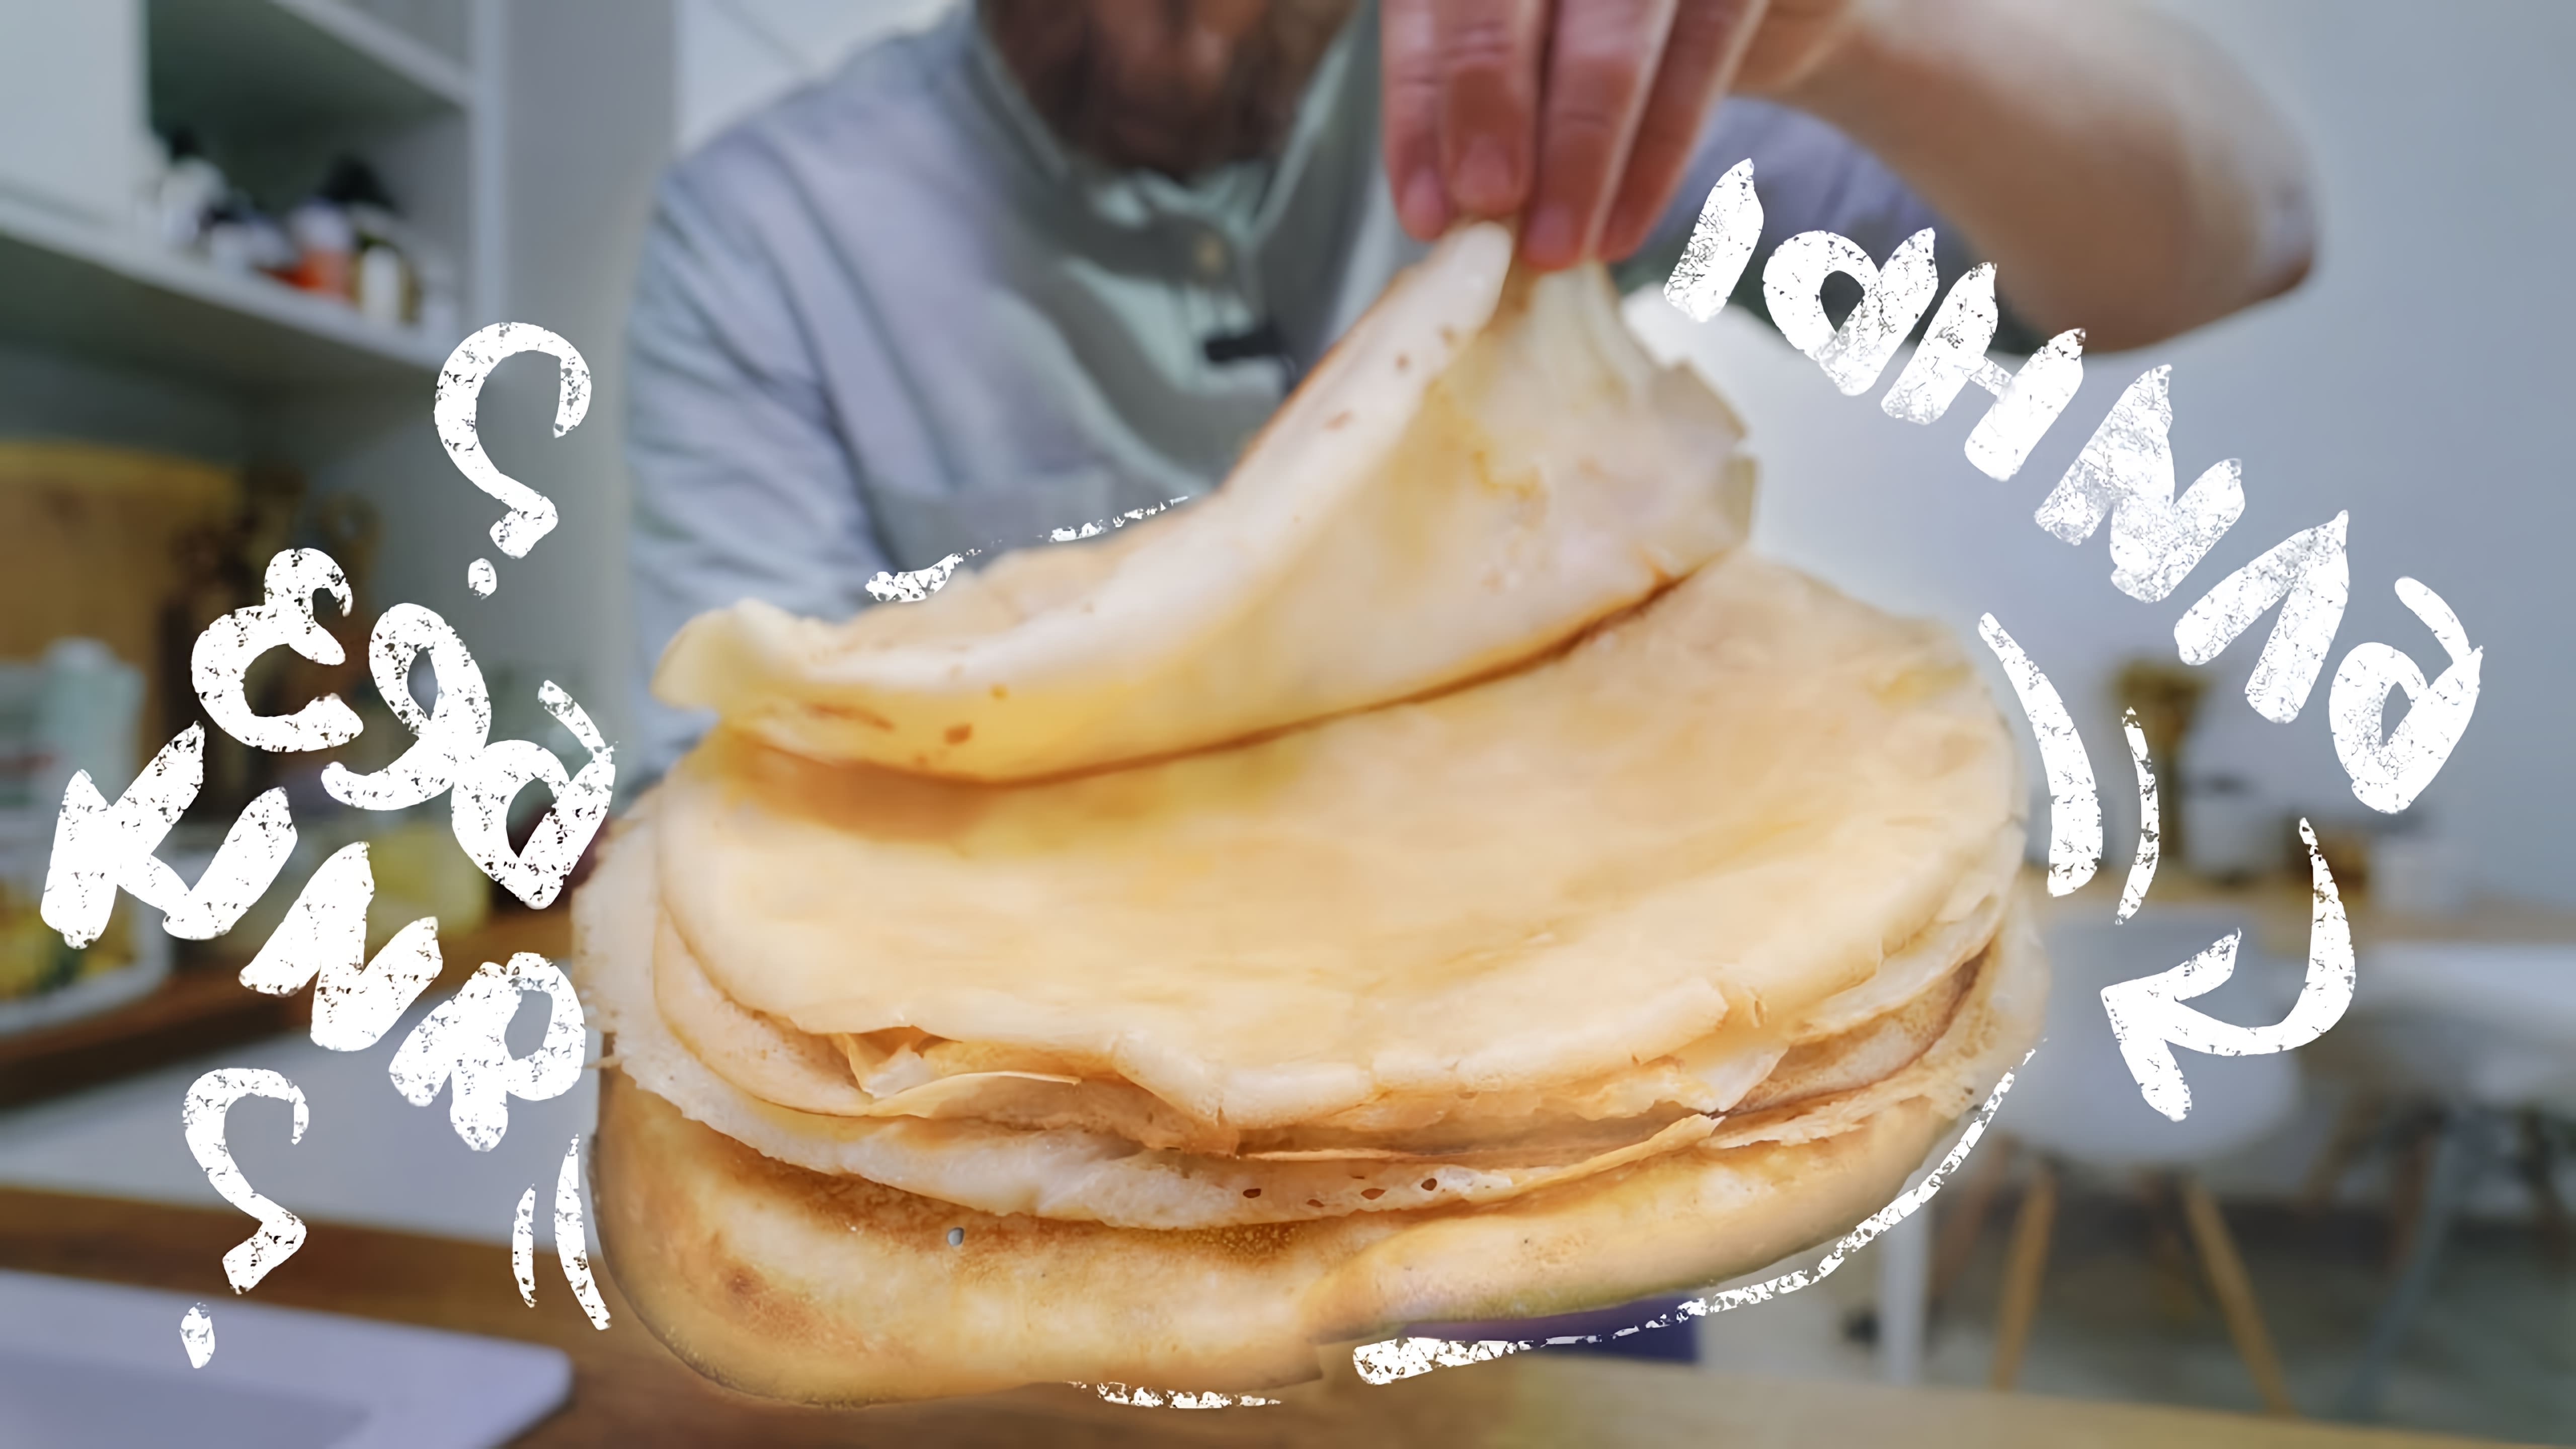 В этом видео демонстрируется рецепт приготовления блинов без яиц и молока